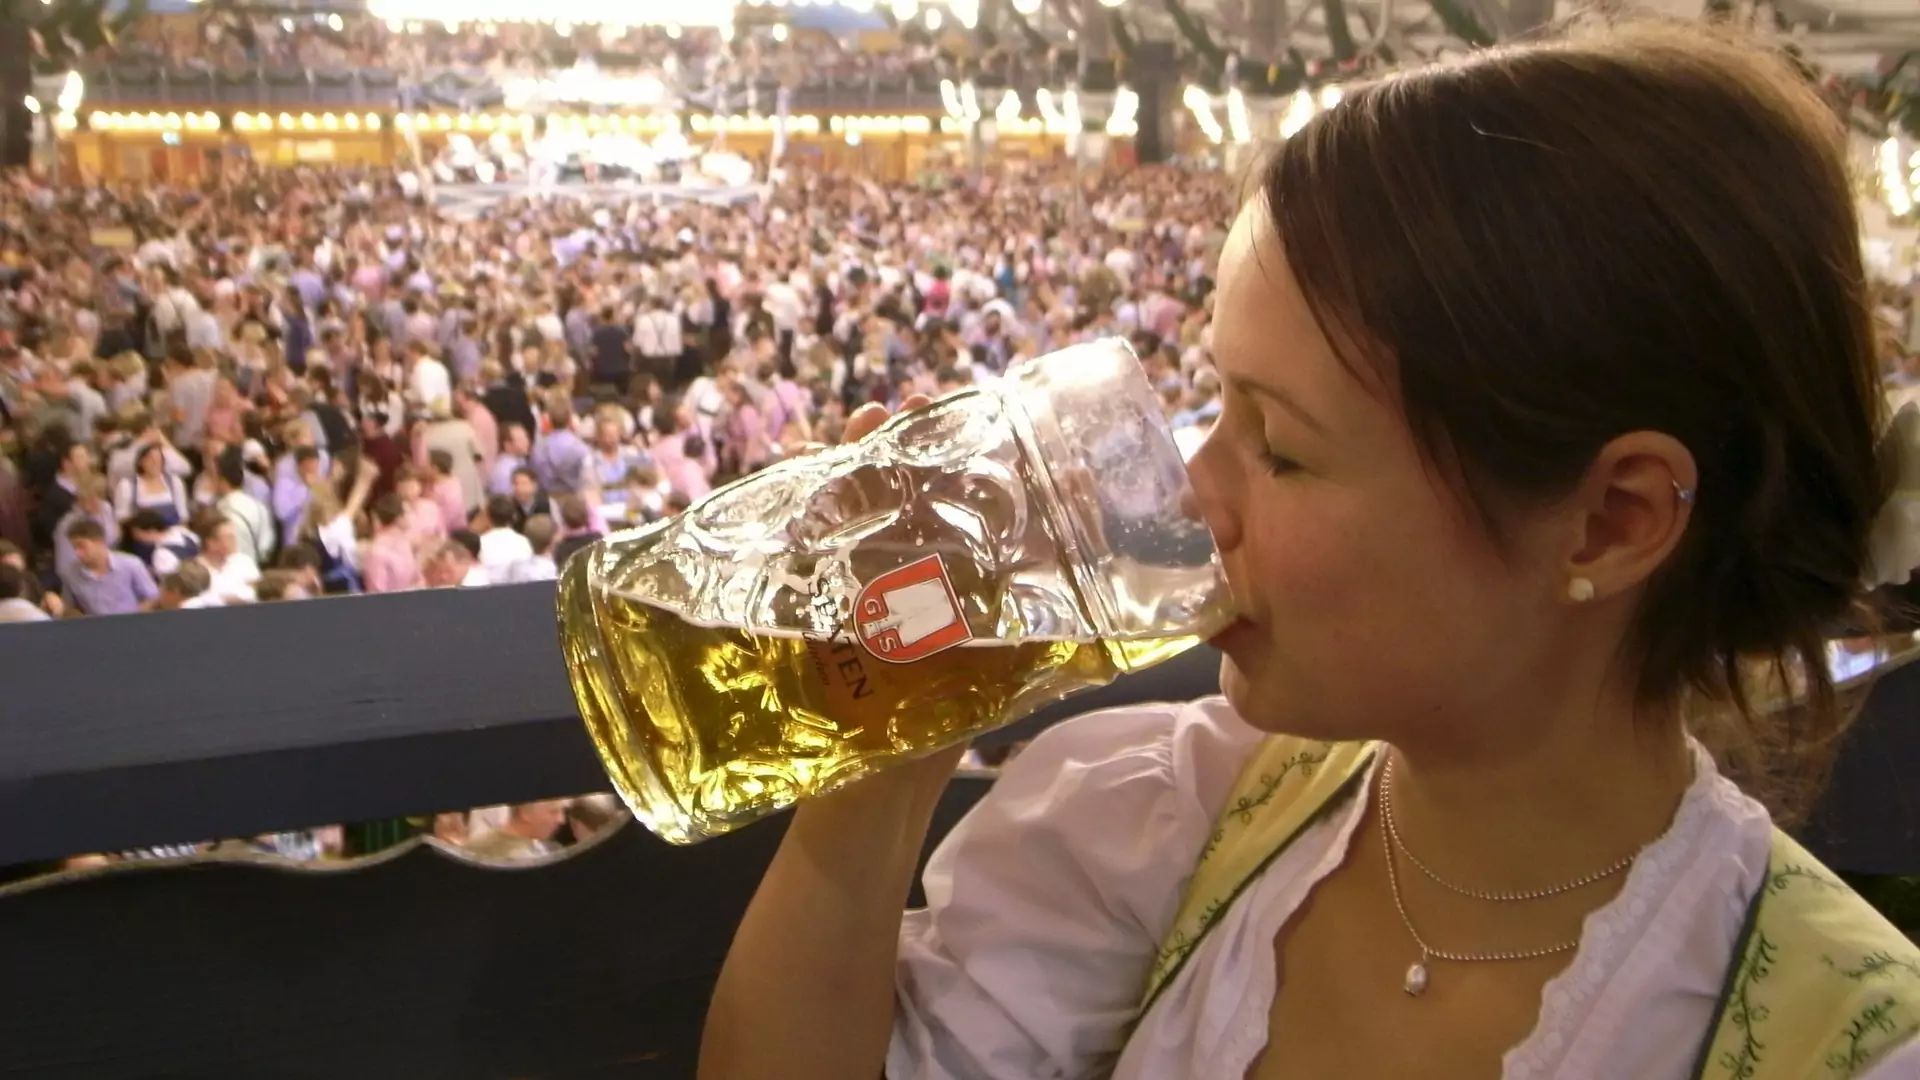 Piwo z beczki, kiełbasa i stewardesy w bawarskich strojach. Lufthansa zmienia zwyczaje na Oktoberfest